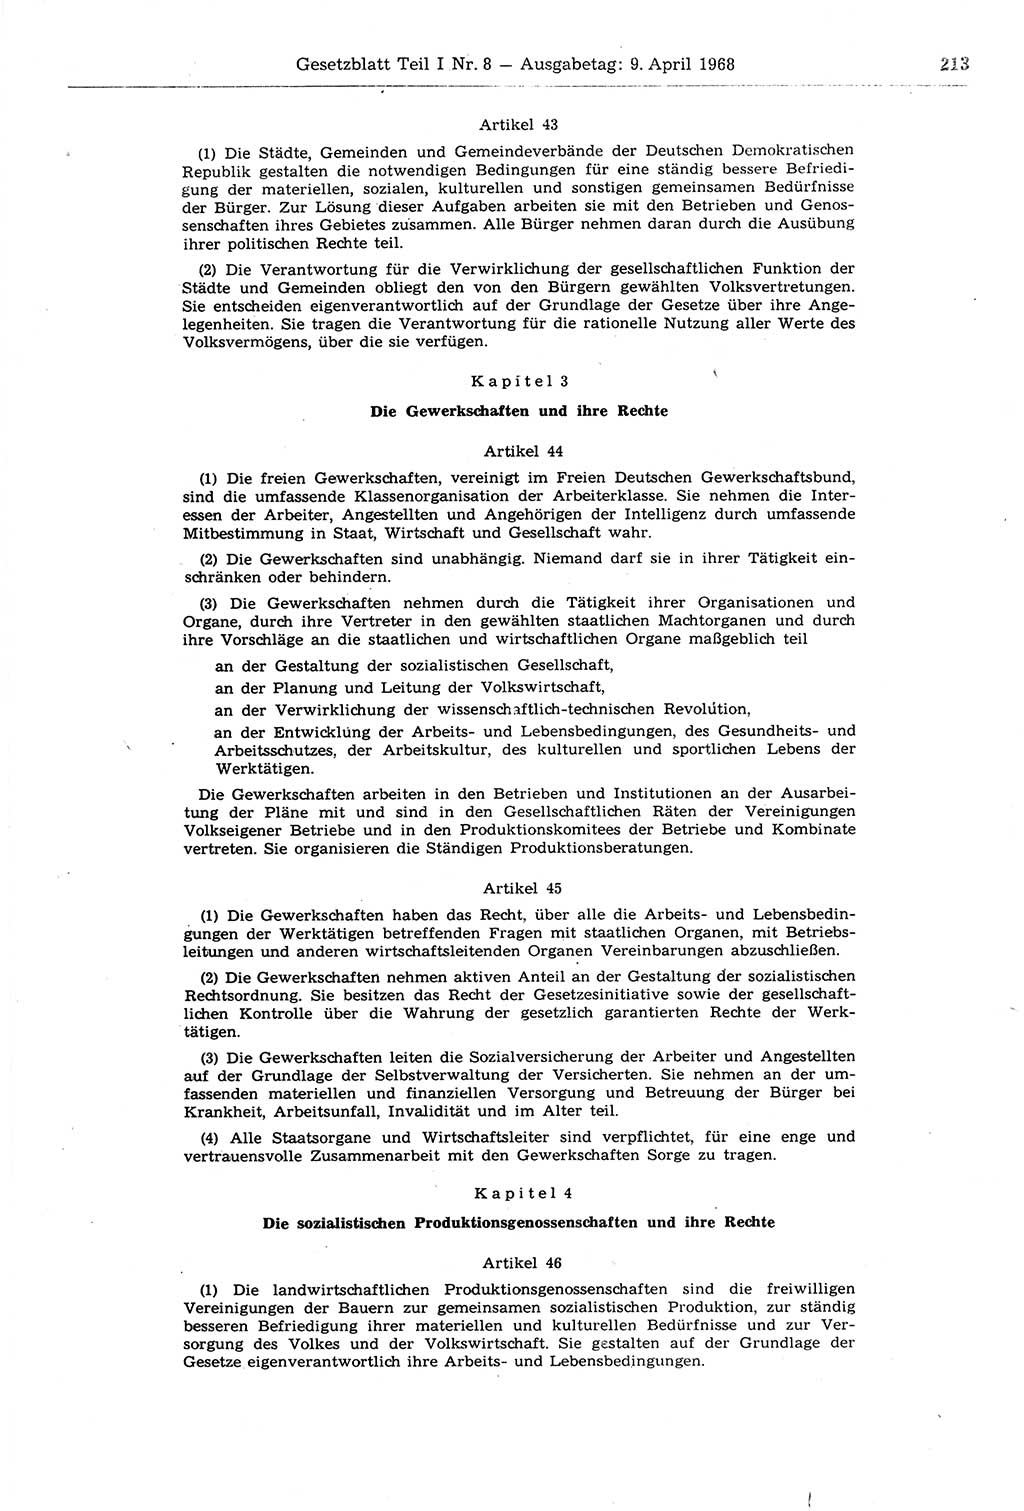 Gesetzblatt (GBl.) der Deutschen Demokratischen Republik (DDR) Teil Ⅰ 1968, Seite 213 (GBl. DDR Ⅰ 1968, S. 213)